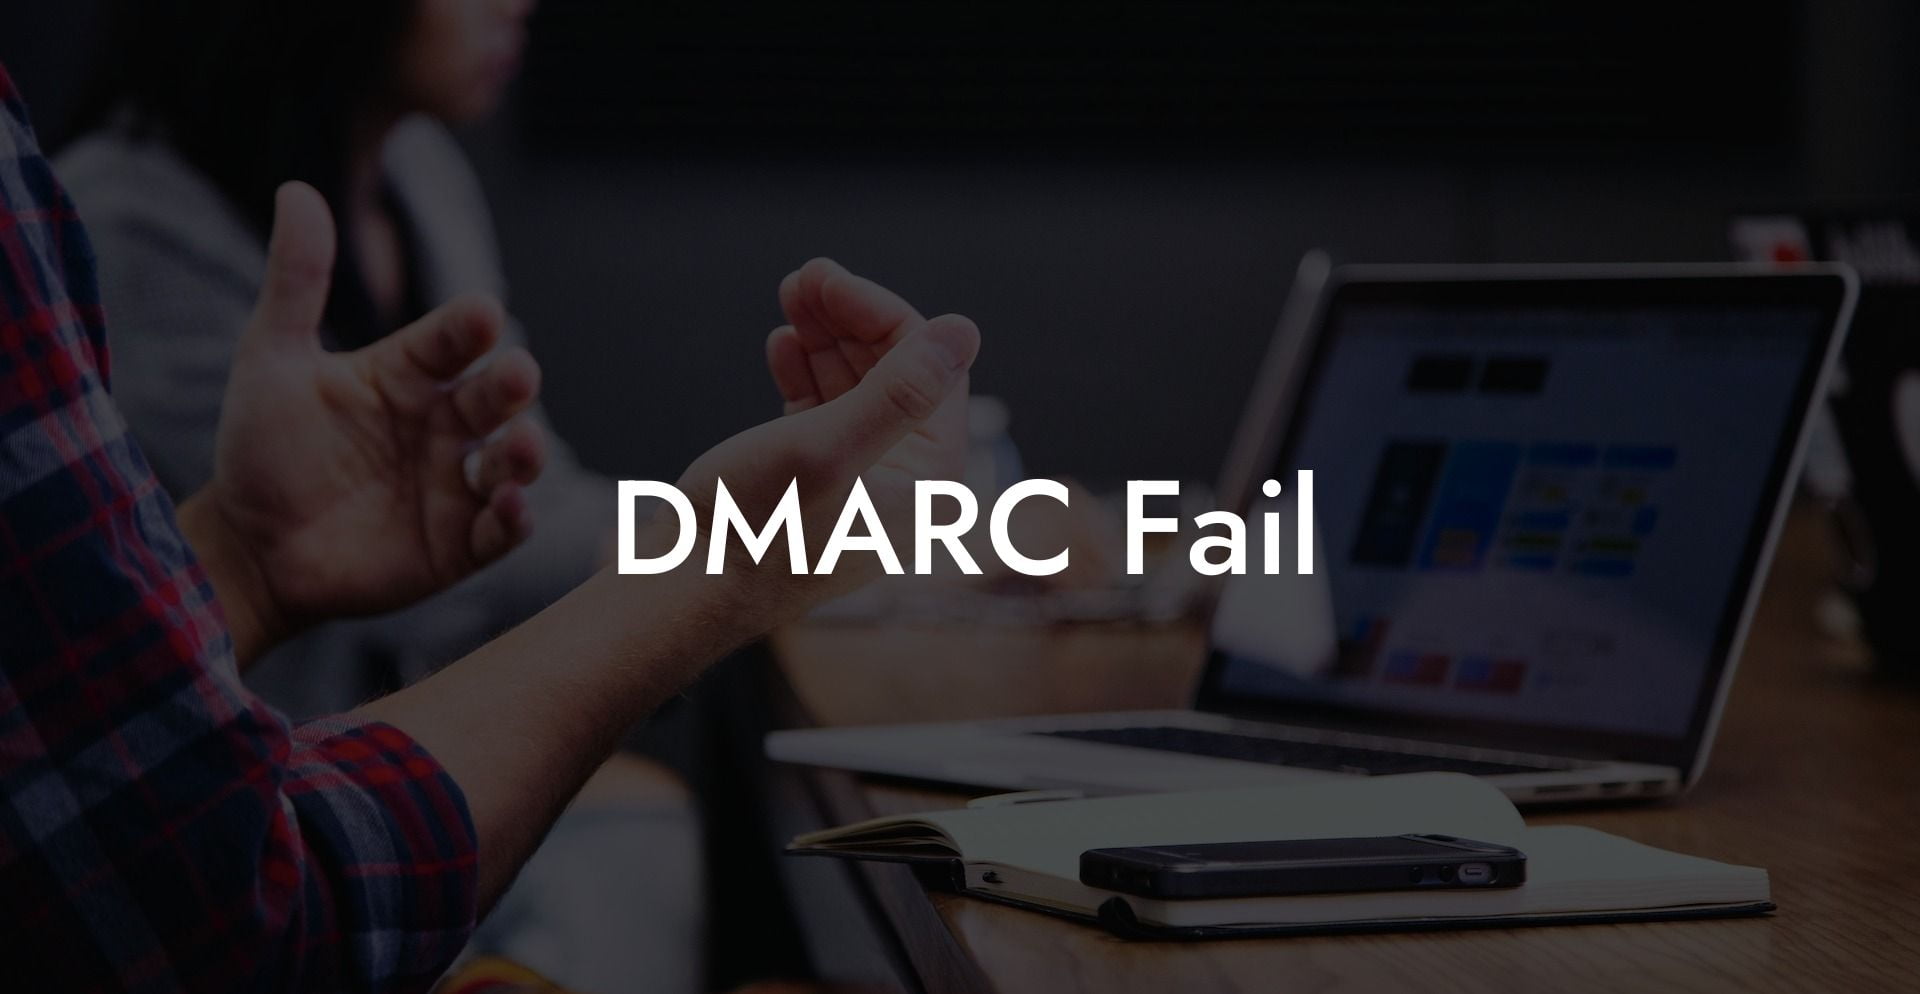 DMARC Fail